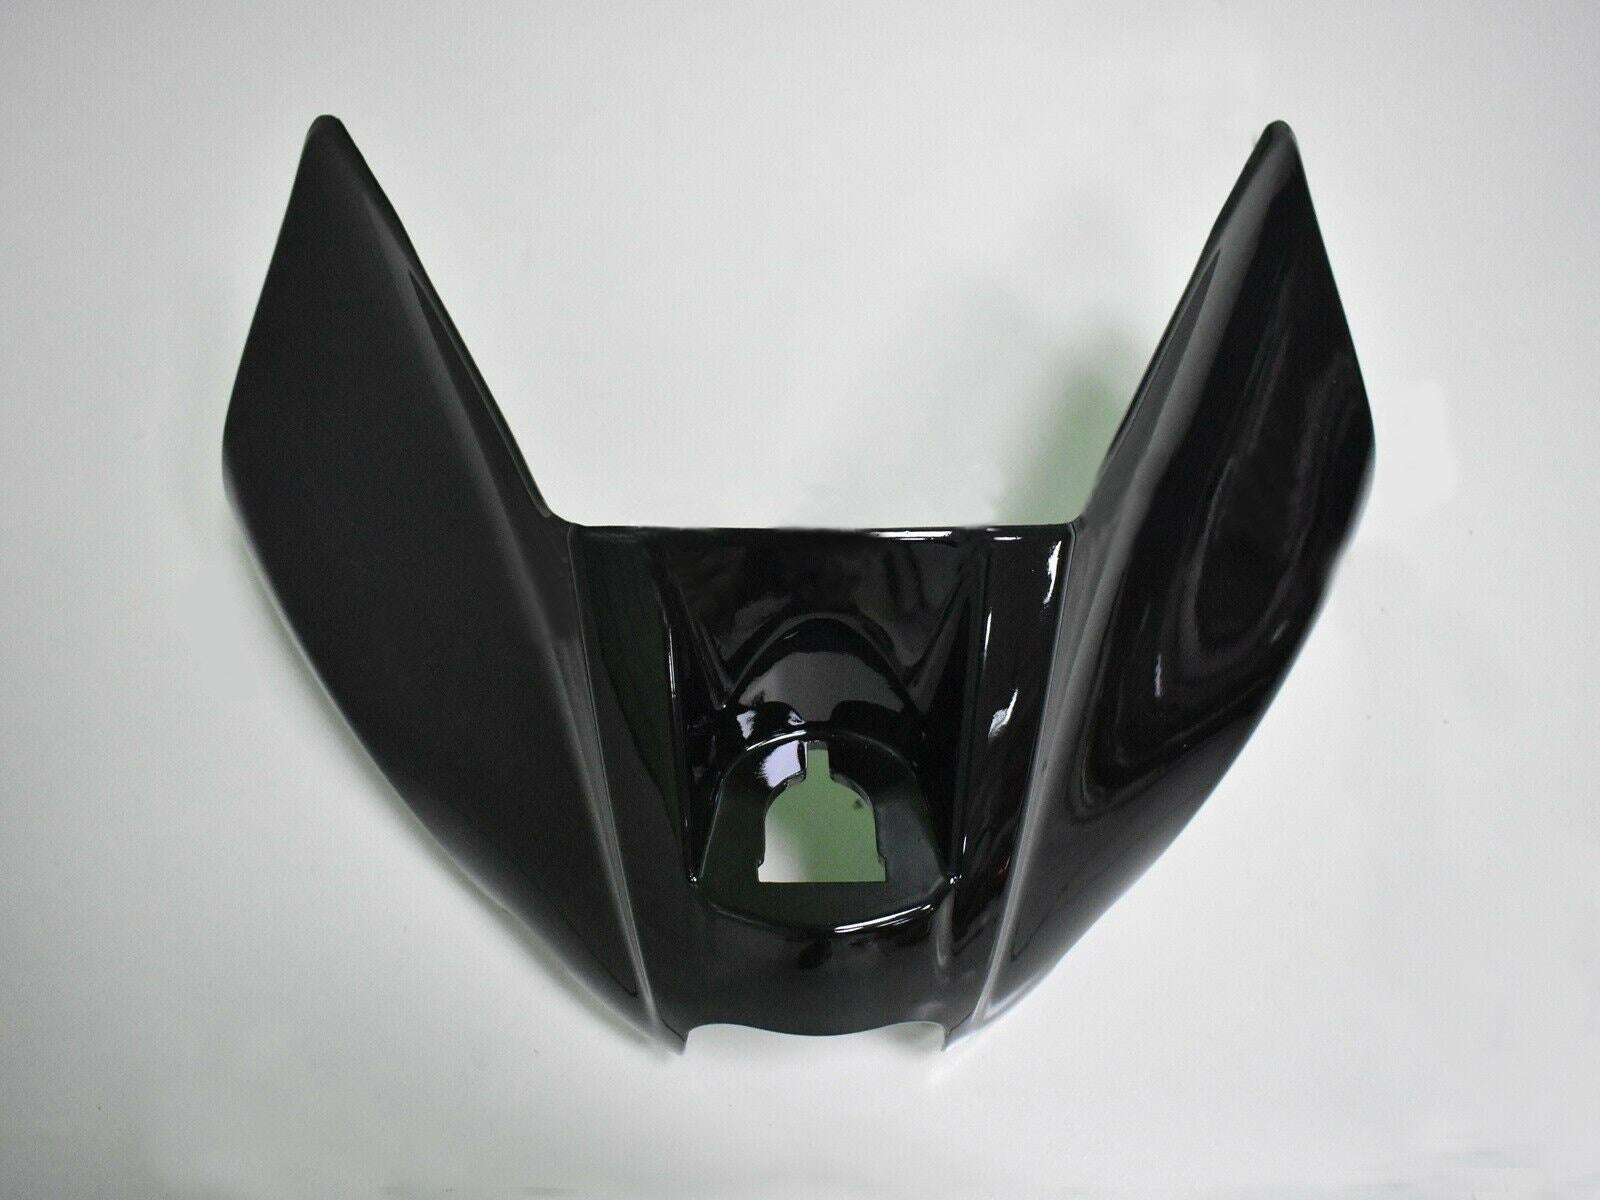 Amotopart Kit de carenado de inyección de plástico para Kawasaki Ninja 650 EX650 2012-2016 rojo negro genérico